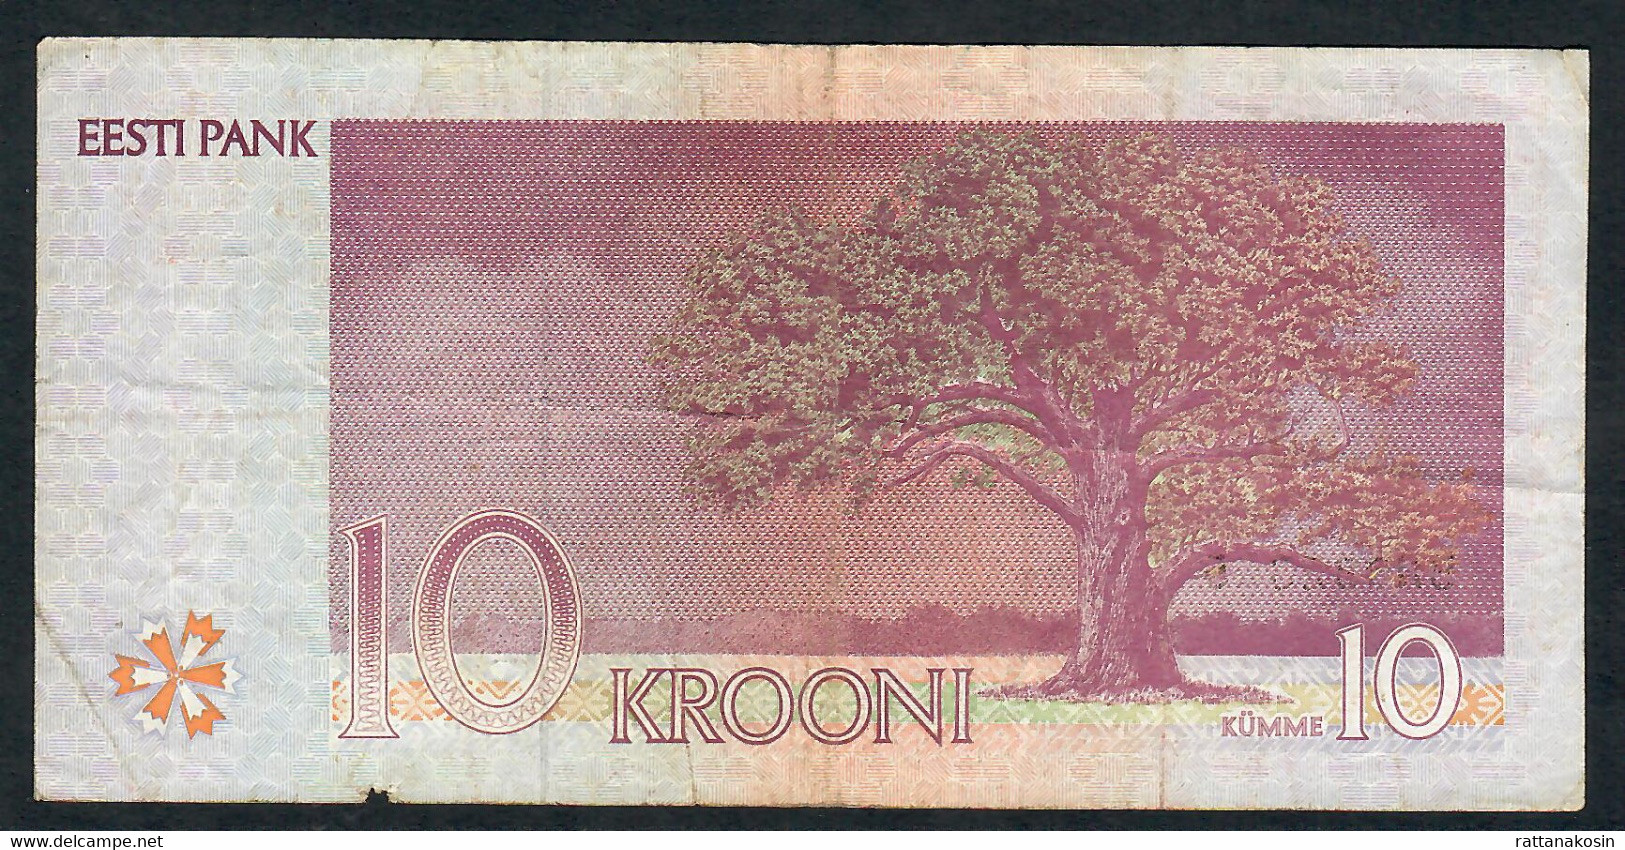 ESTONIA P77  10  KROONI 1994 #BN   VG/ FINE - Estonia